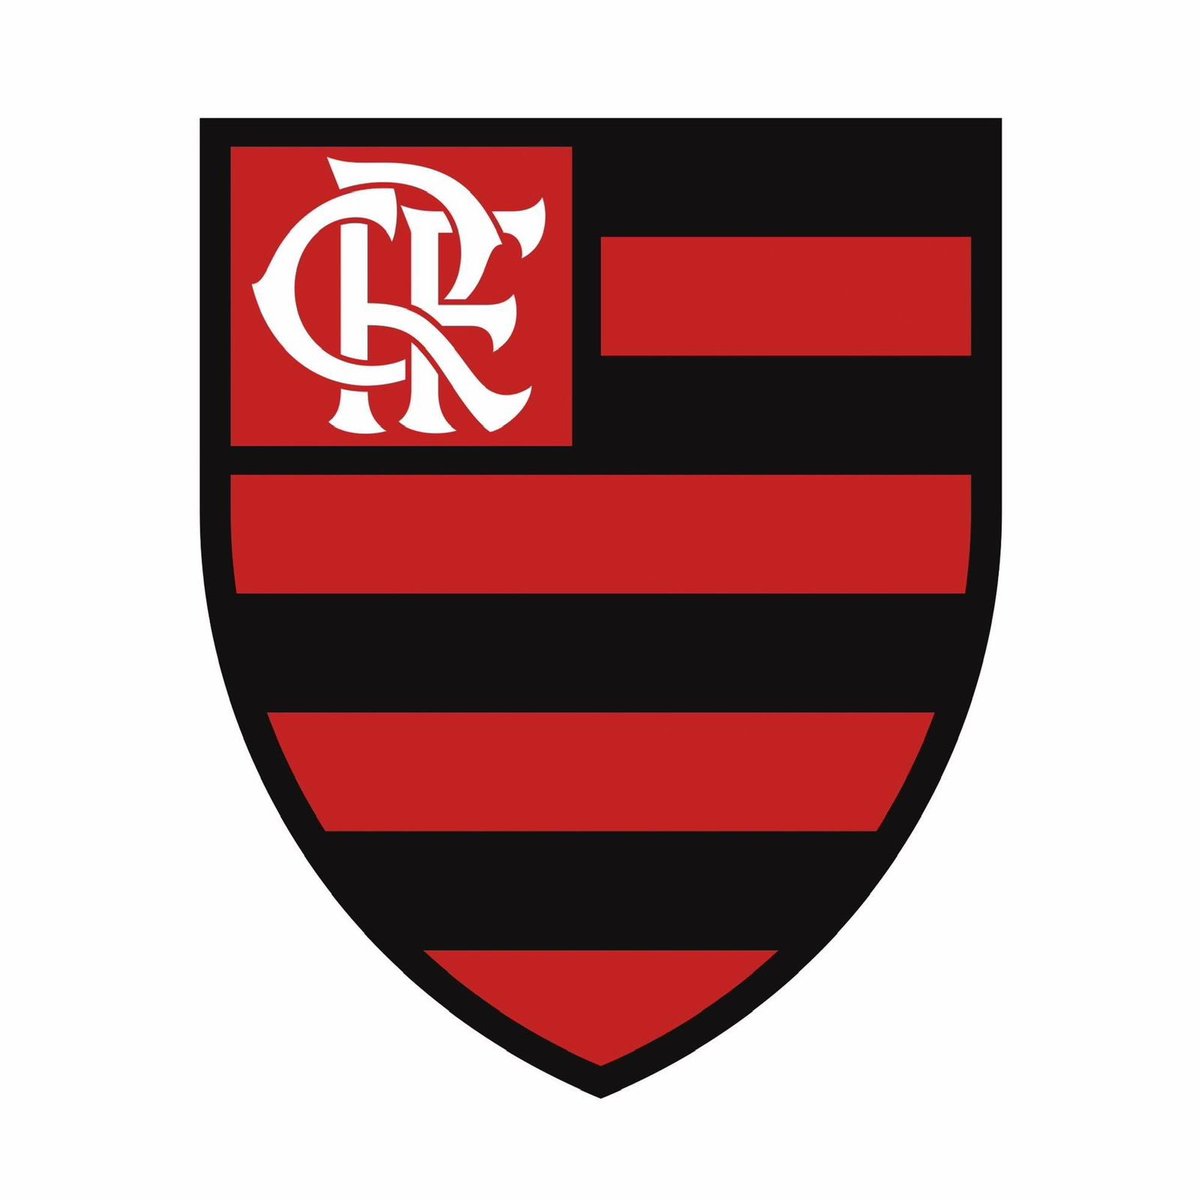 O Clube de Regatas do Flamengo repudia veementemente o ocorrido no sábado (6), em Bradenton, nos Estados Unidos, na semifinal da Generation Adidas Cup Sub-17, quando alguns atletas do nosso elenco foram vítimas de injúria racial. É inaceitável que episódios como este continuem